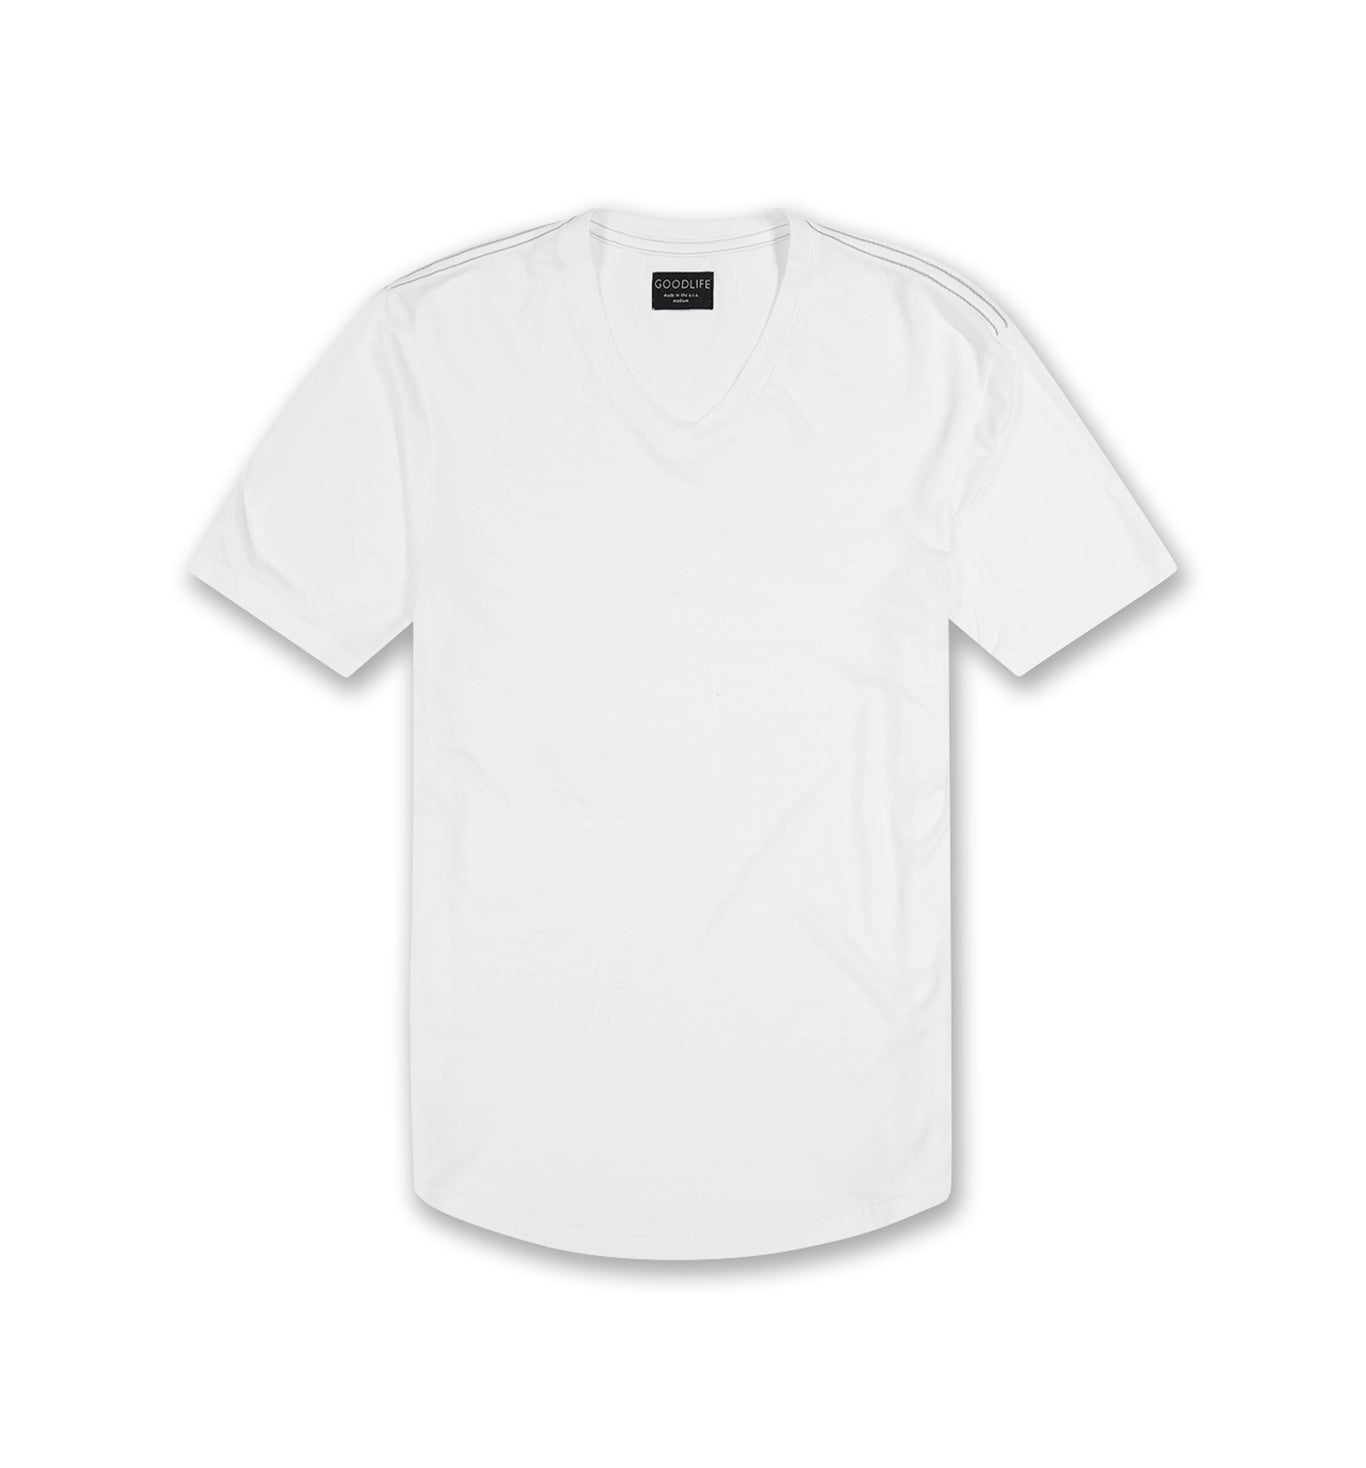 White V-Neck T-Shirt for Men - Tri Blend | Goodlife Clothing